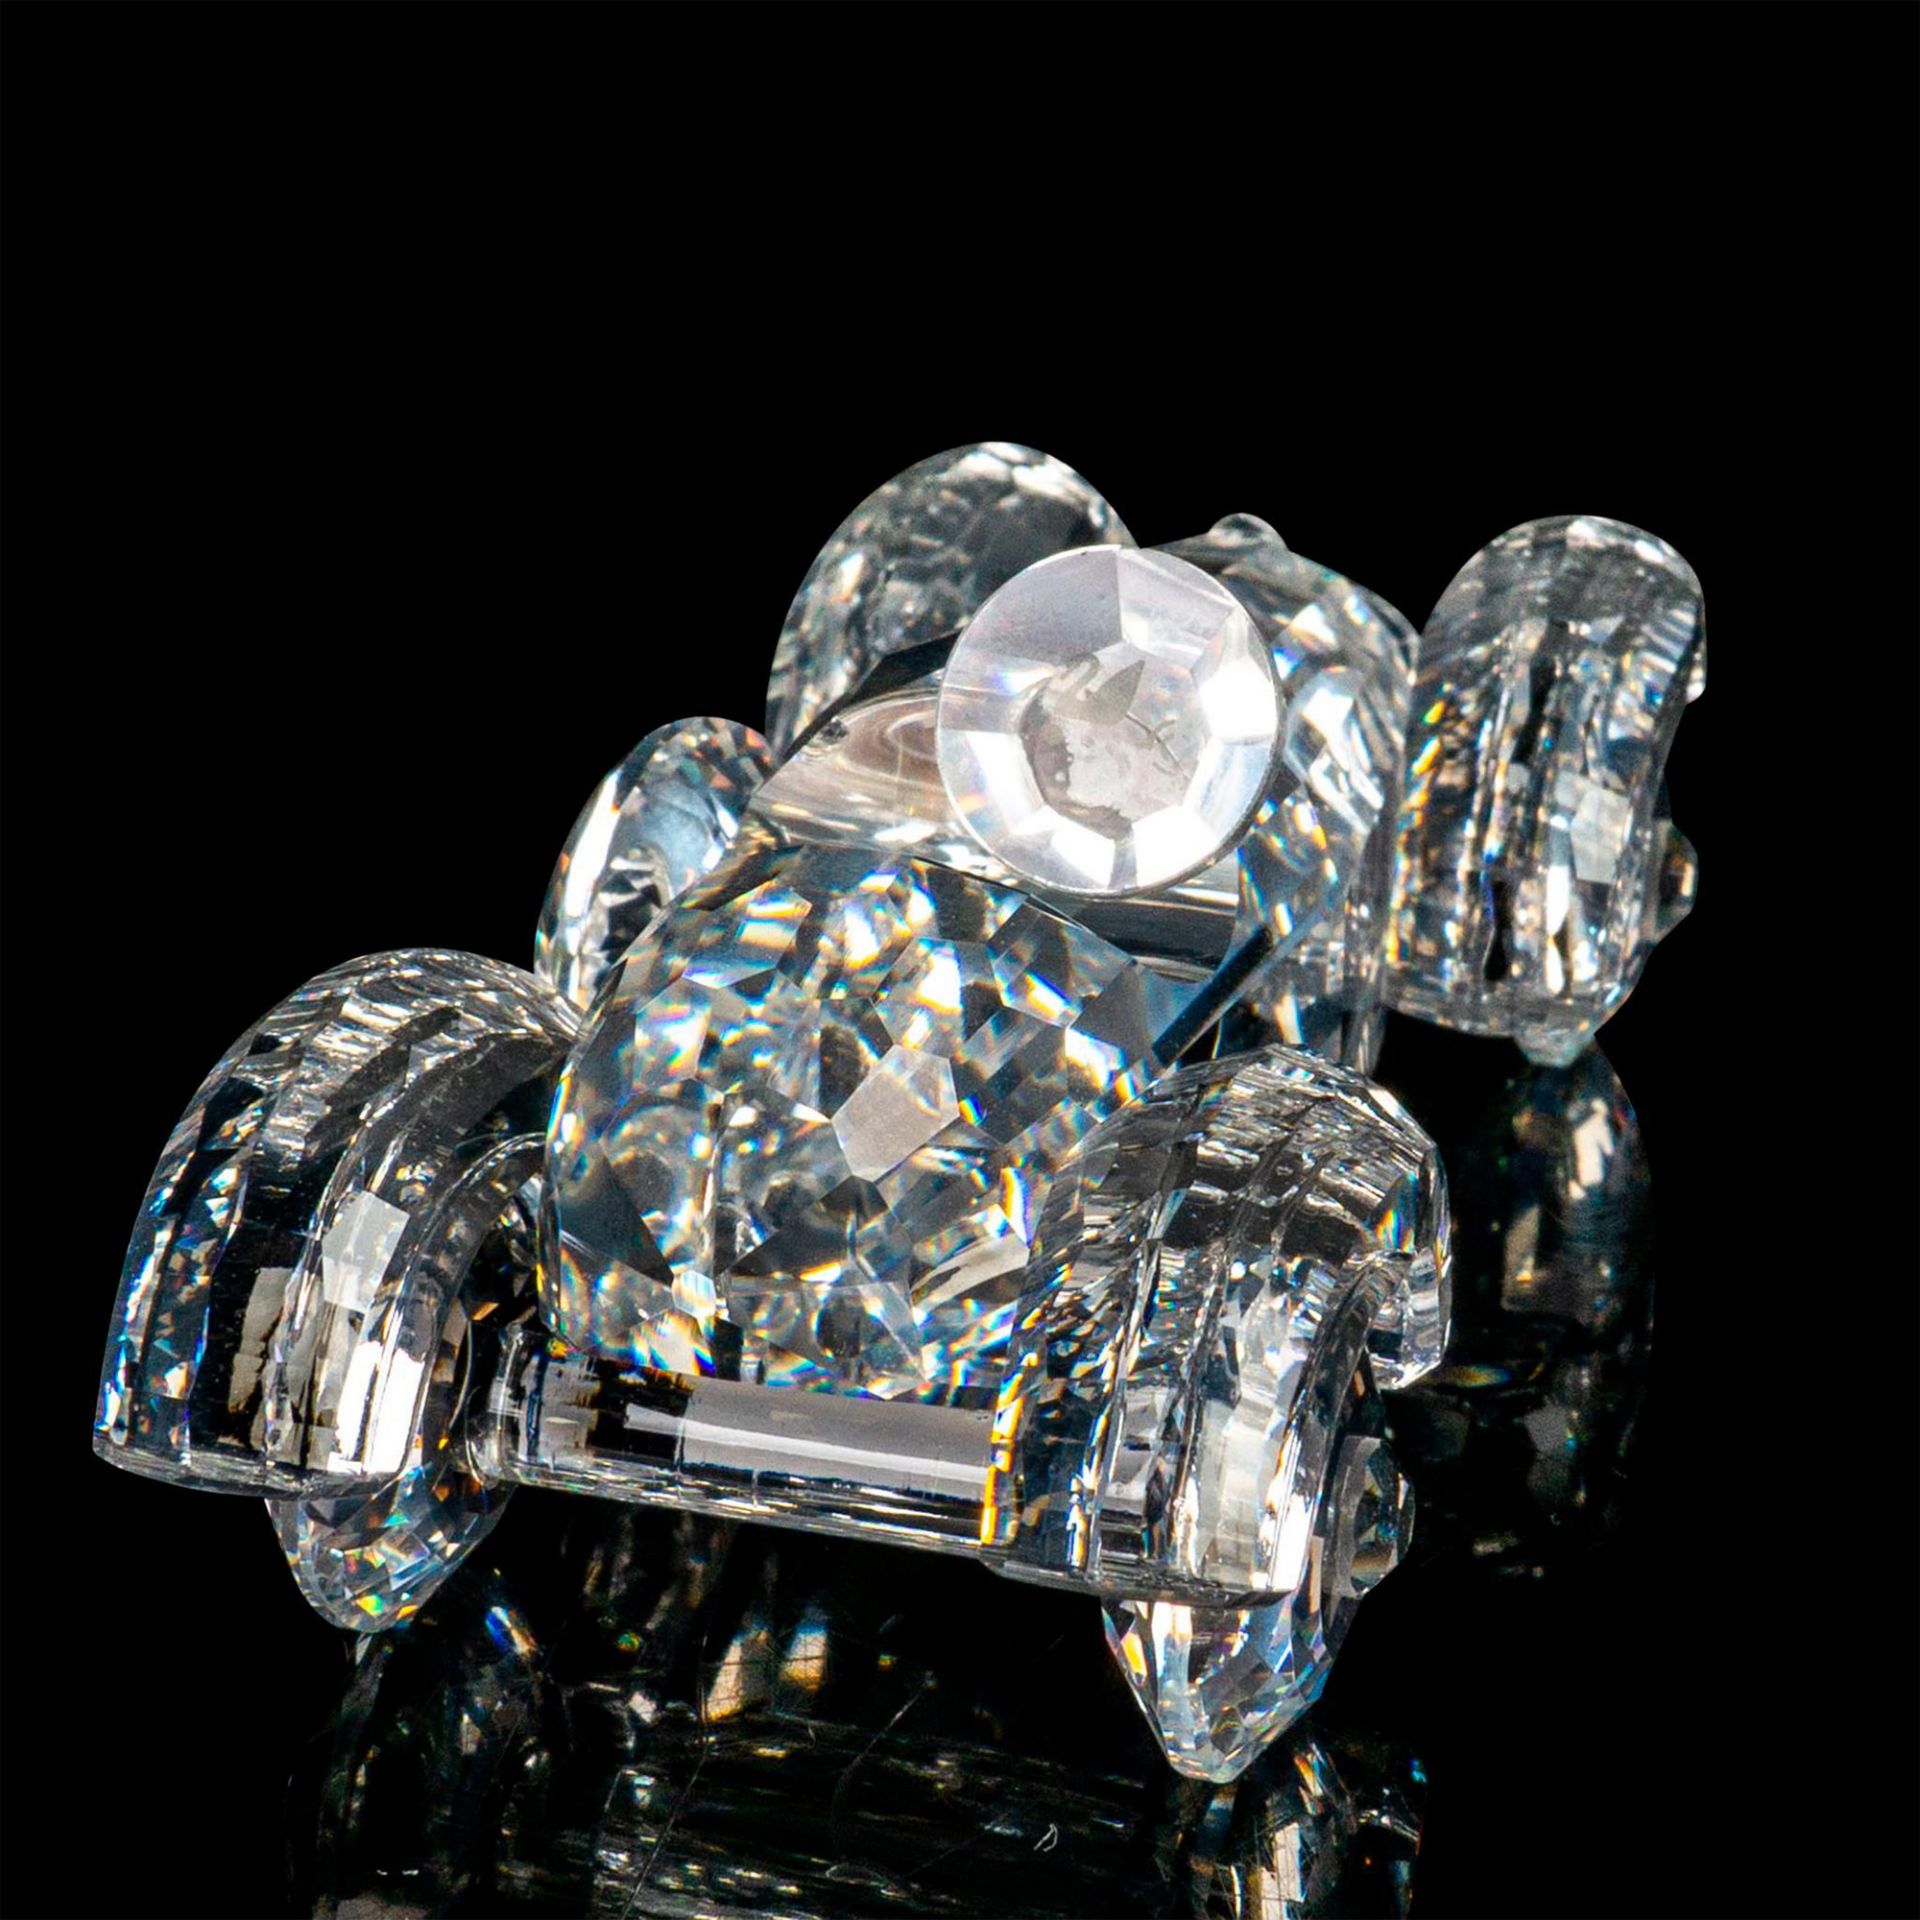 Swarovski Silver Crystal Figurine, Old Timer - Image 2 of 4